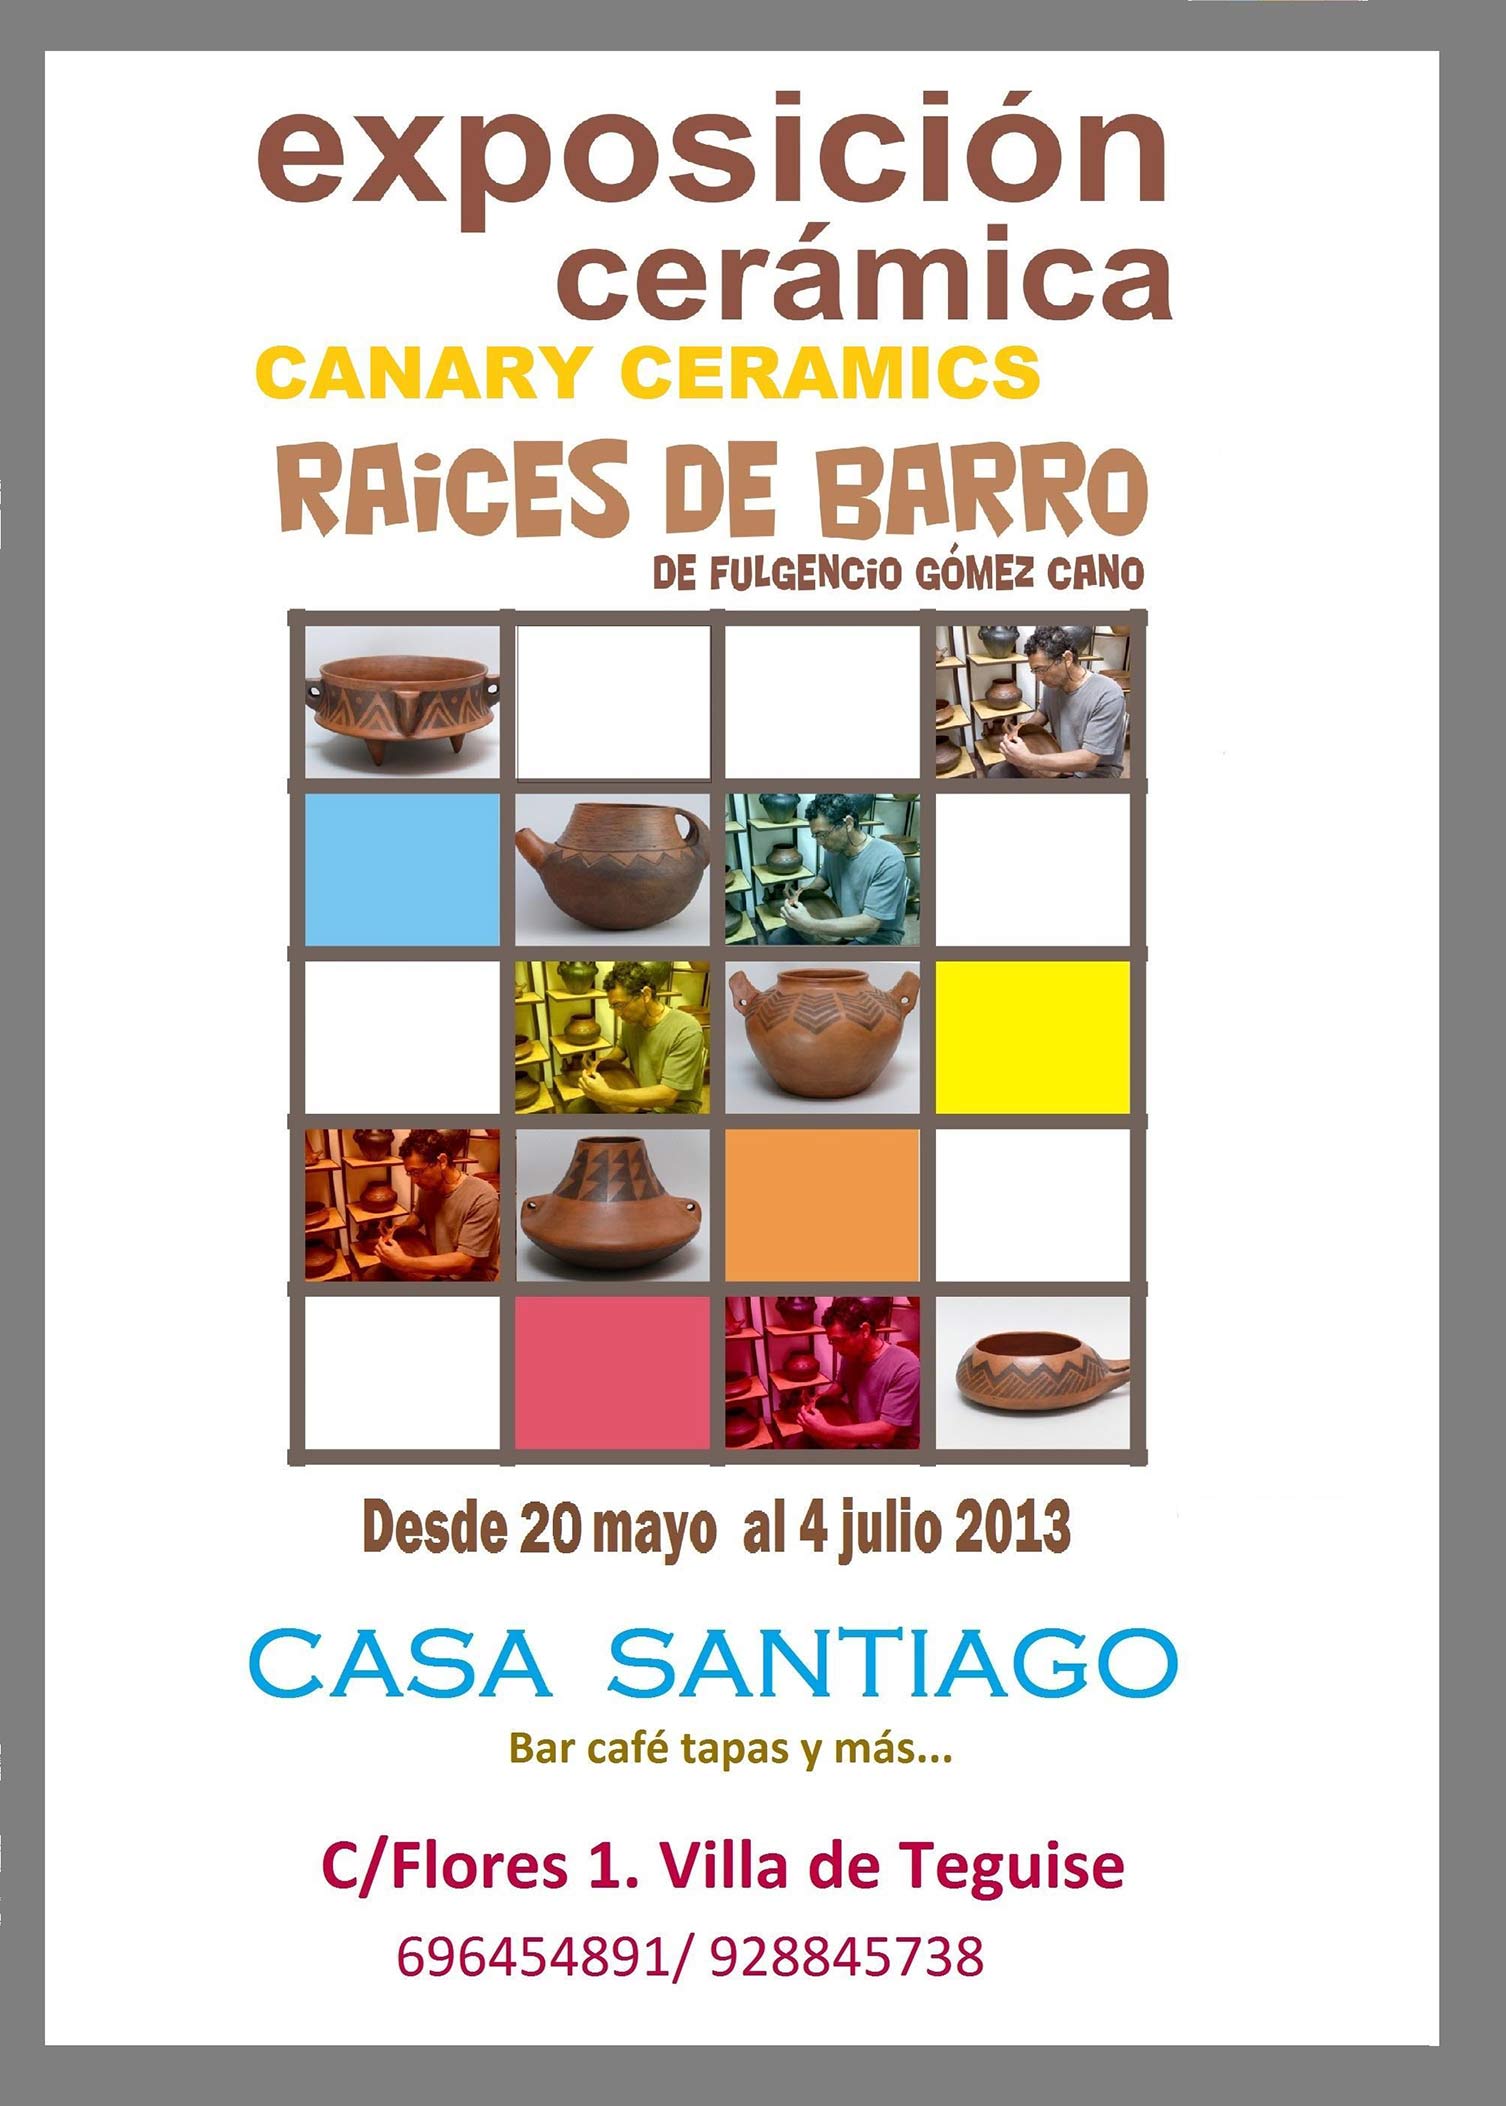 Exposicion Raíces de barro, por Fulgencio Gómez, en Casa Santiago, Teguise, Lanzarote